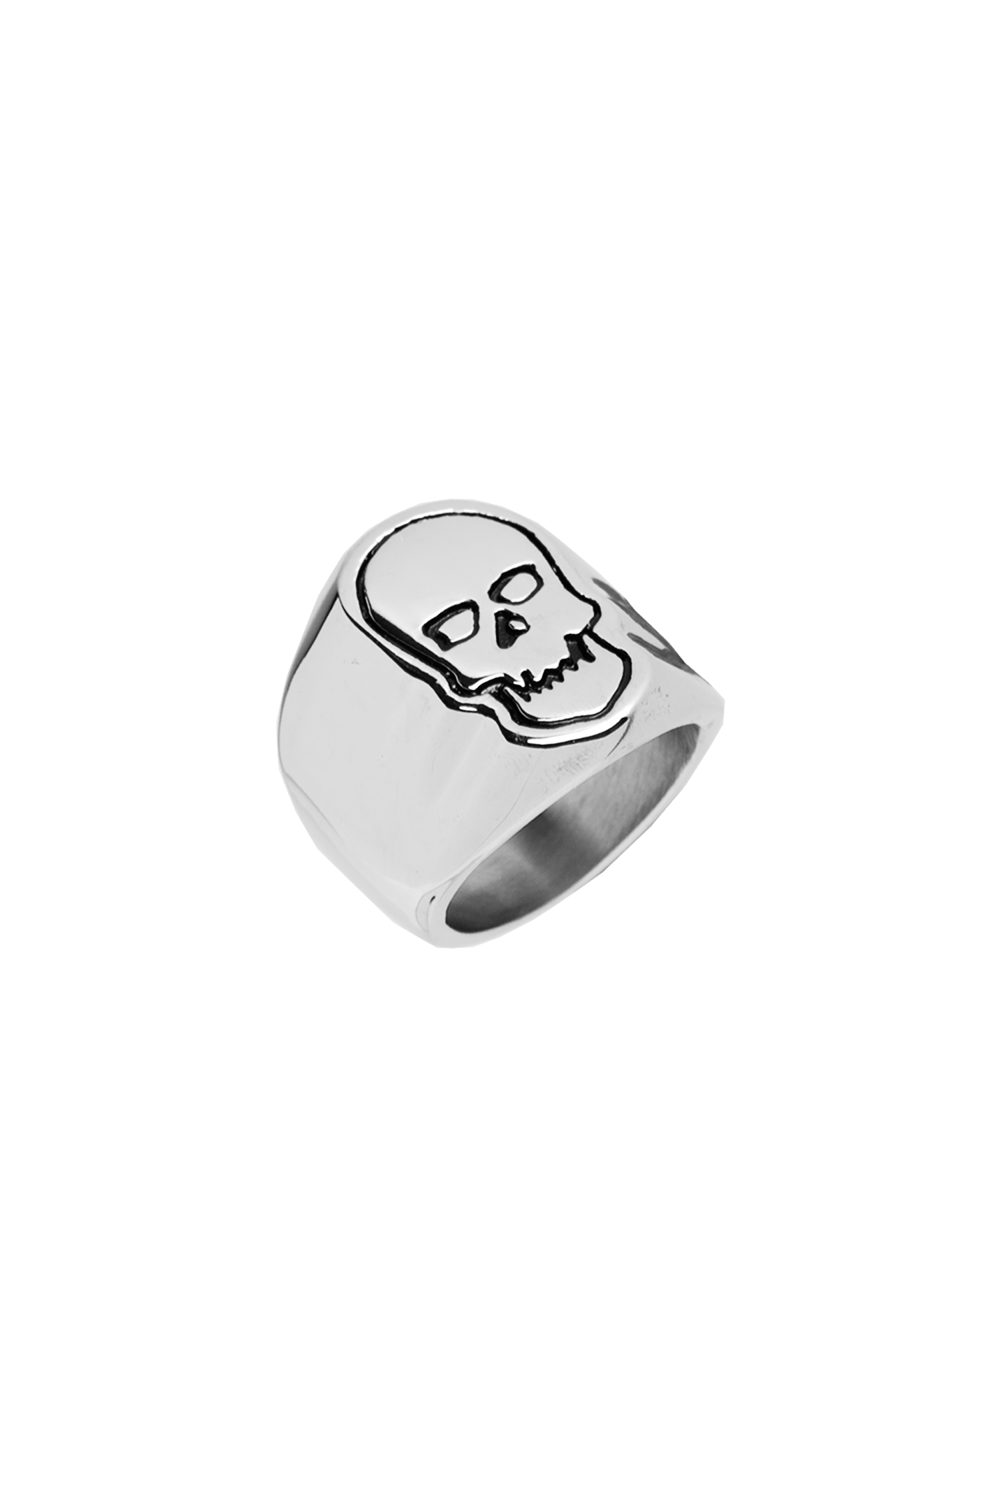 Image of "SeshSkull" Ring